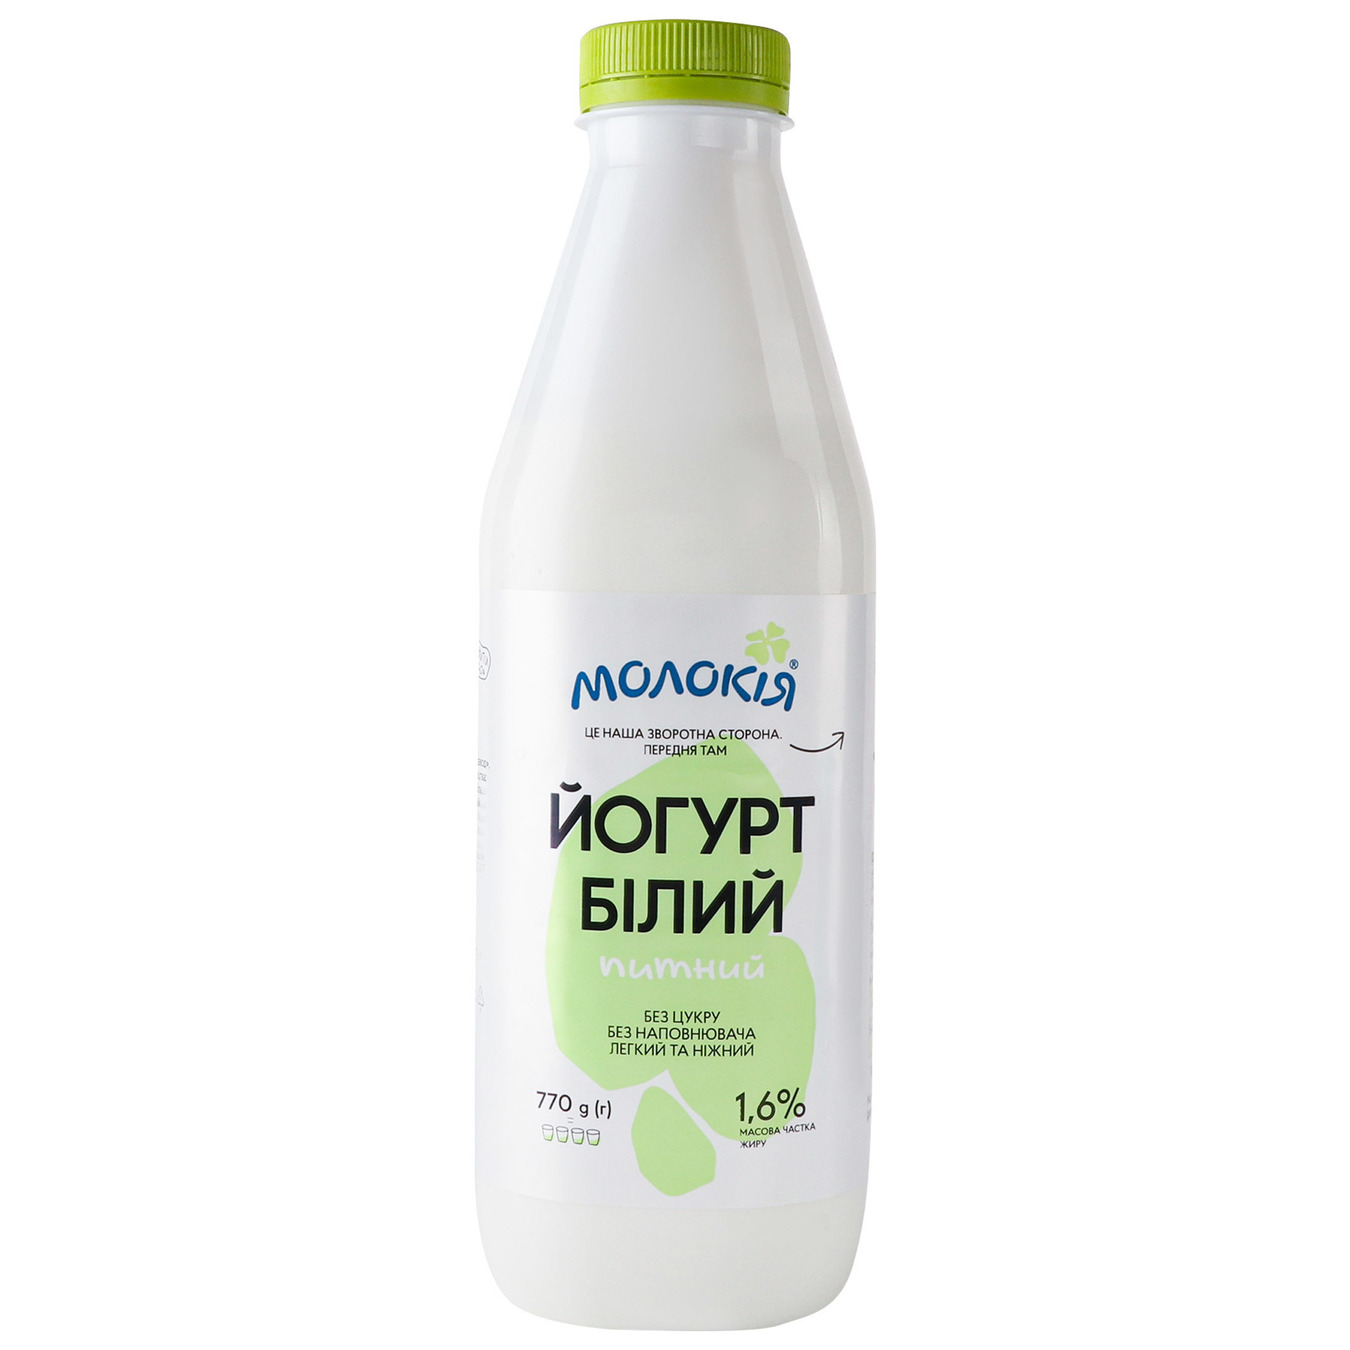 Molokiya Yogurt White drinkable 1.6% 770g